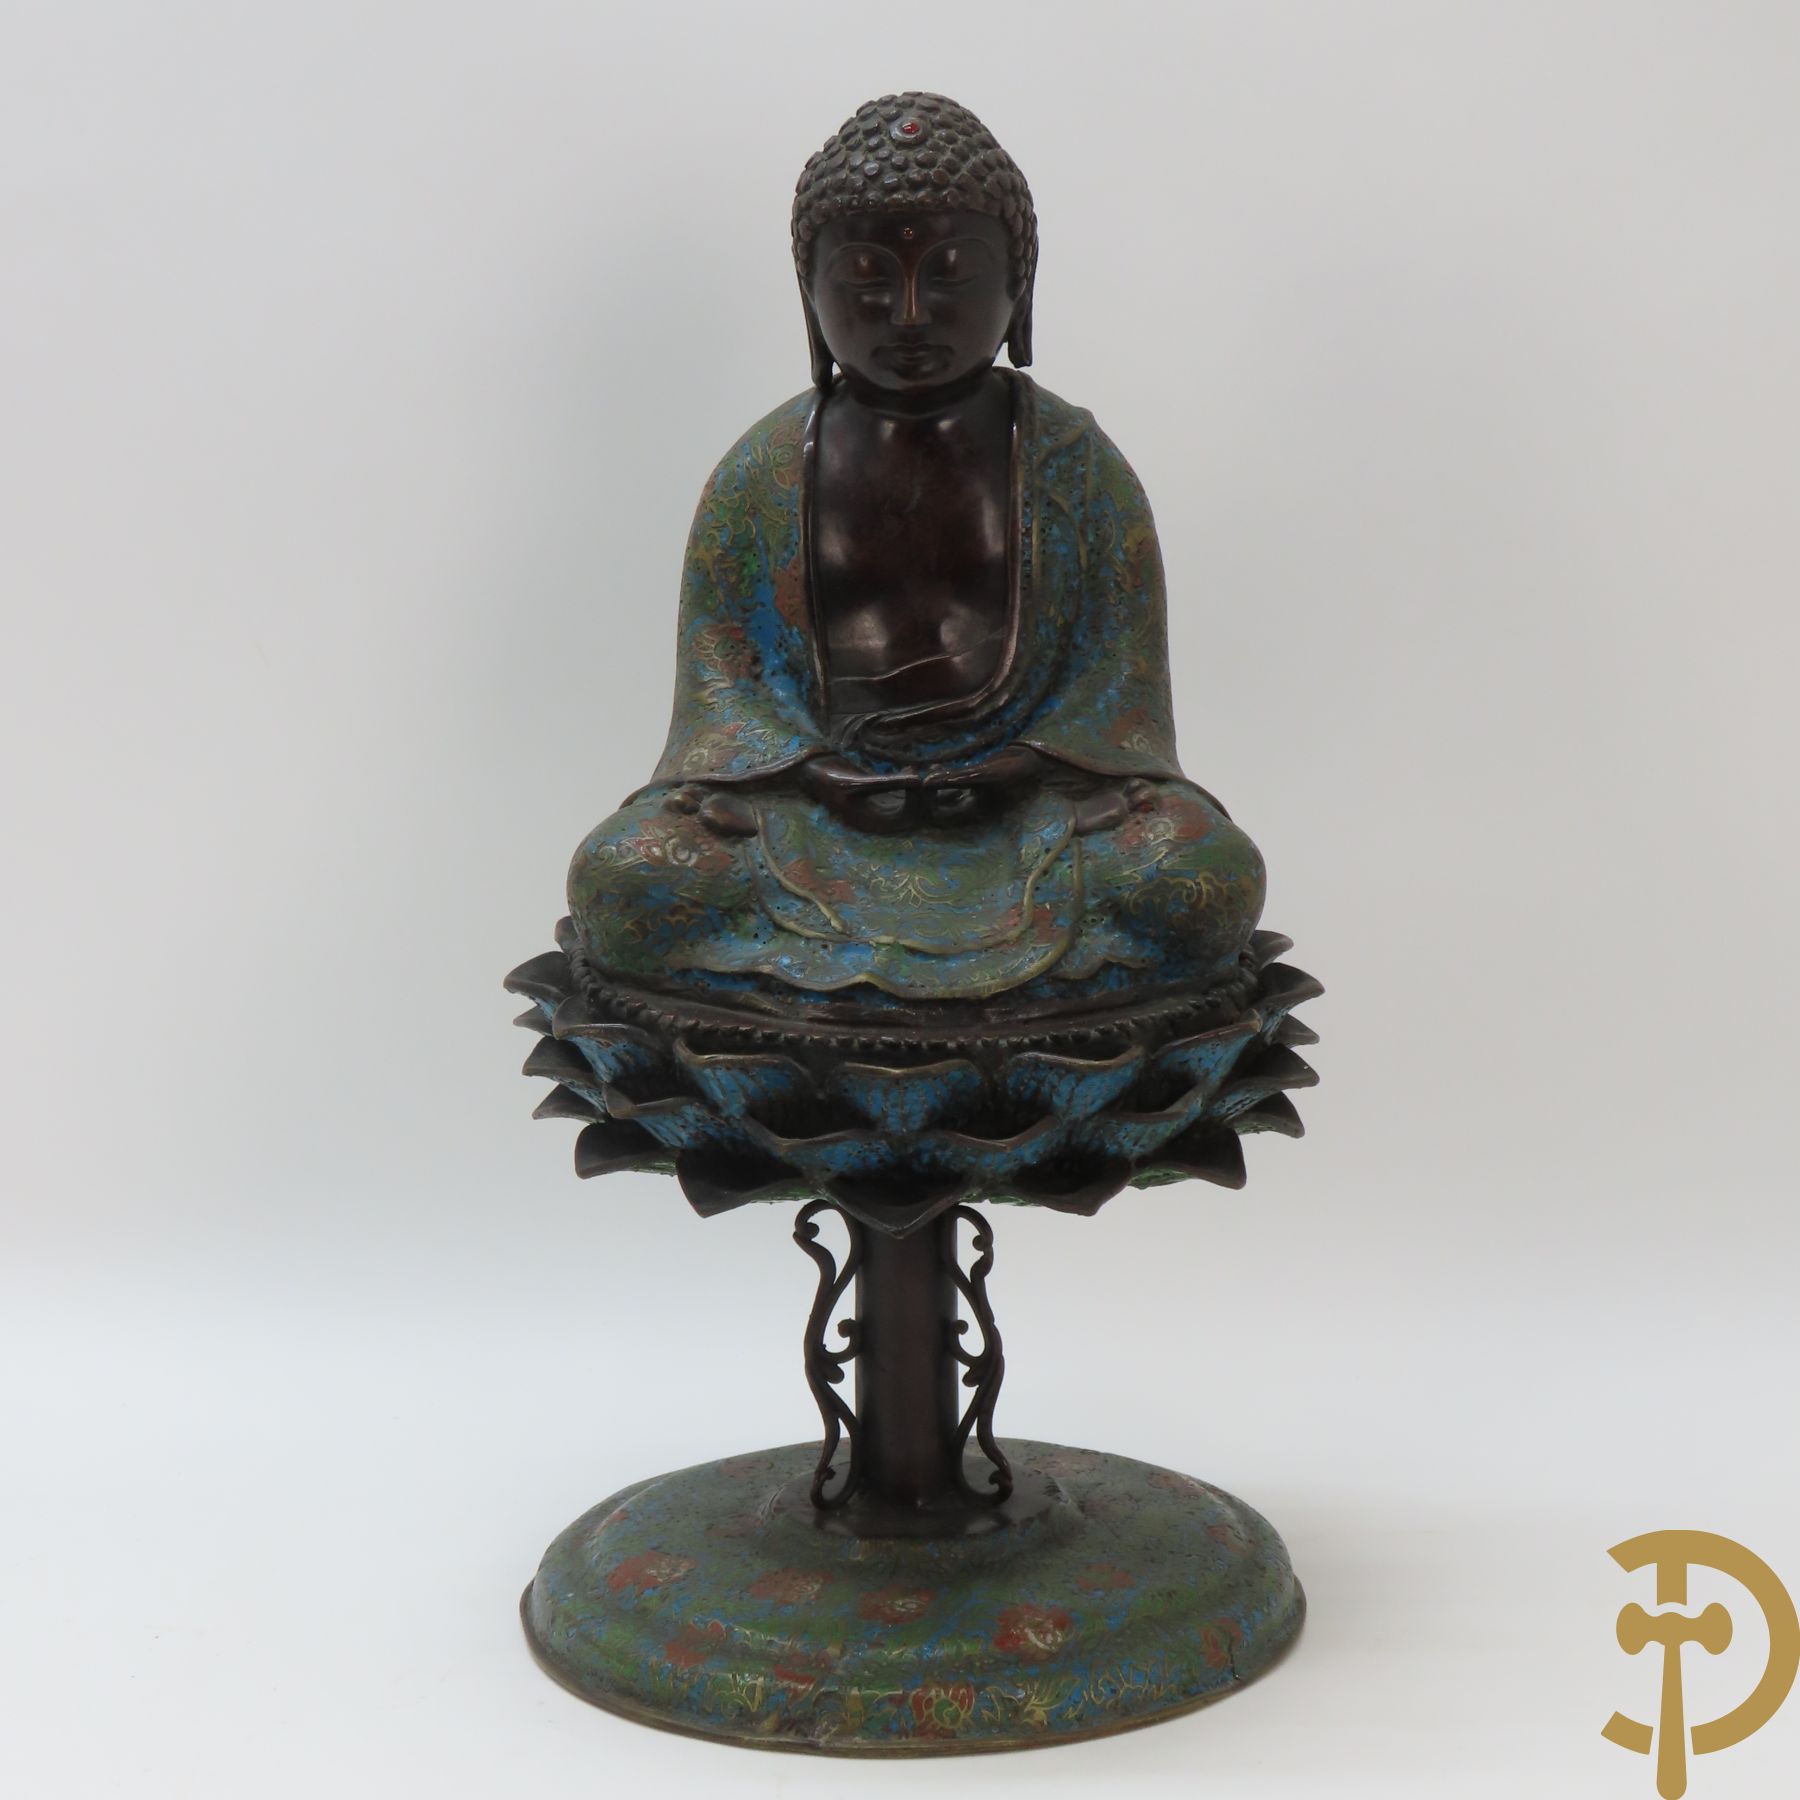 Zittende bronzen boeddha op lotusbloem met cloisoné techniek, onderaan gemerkt